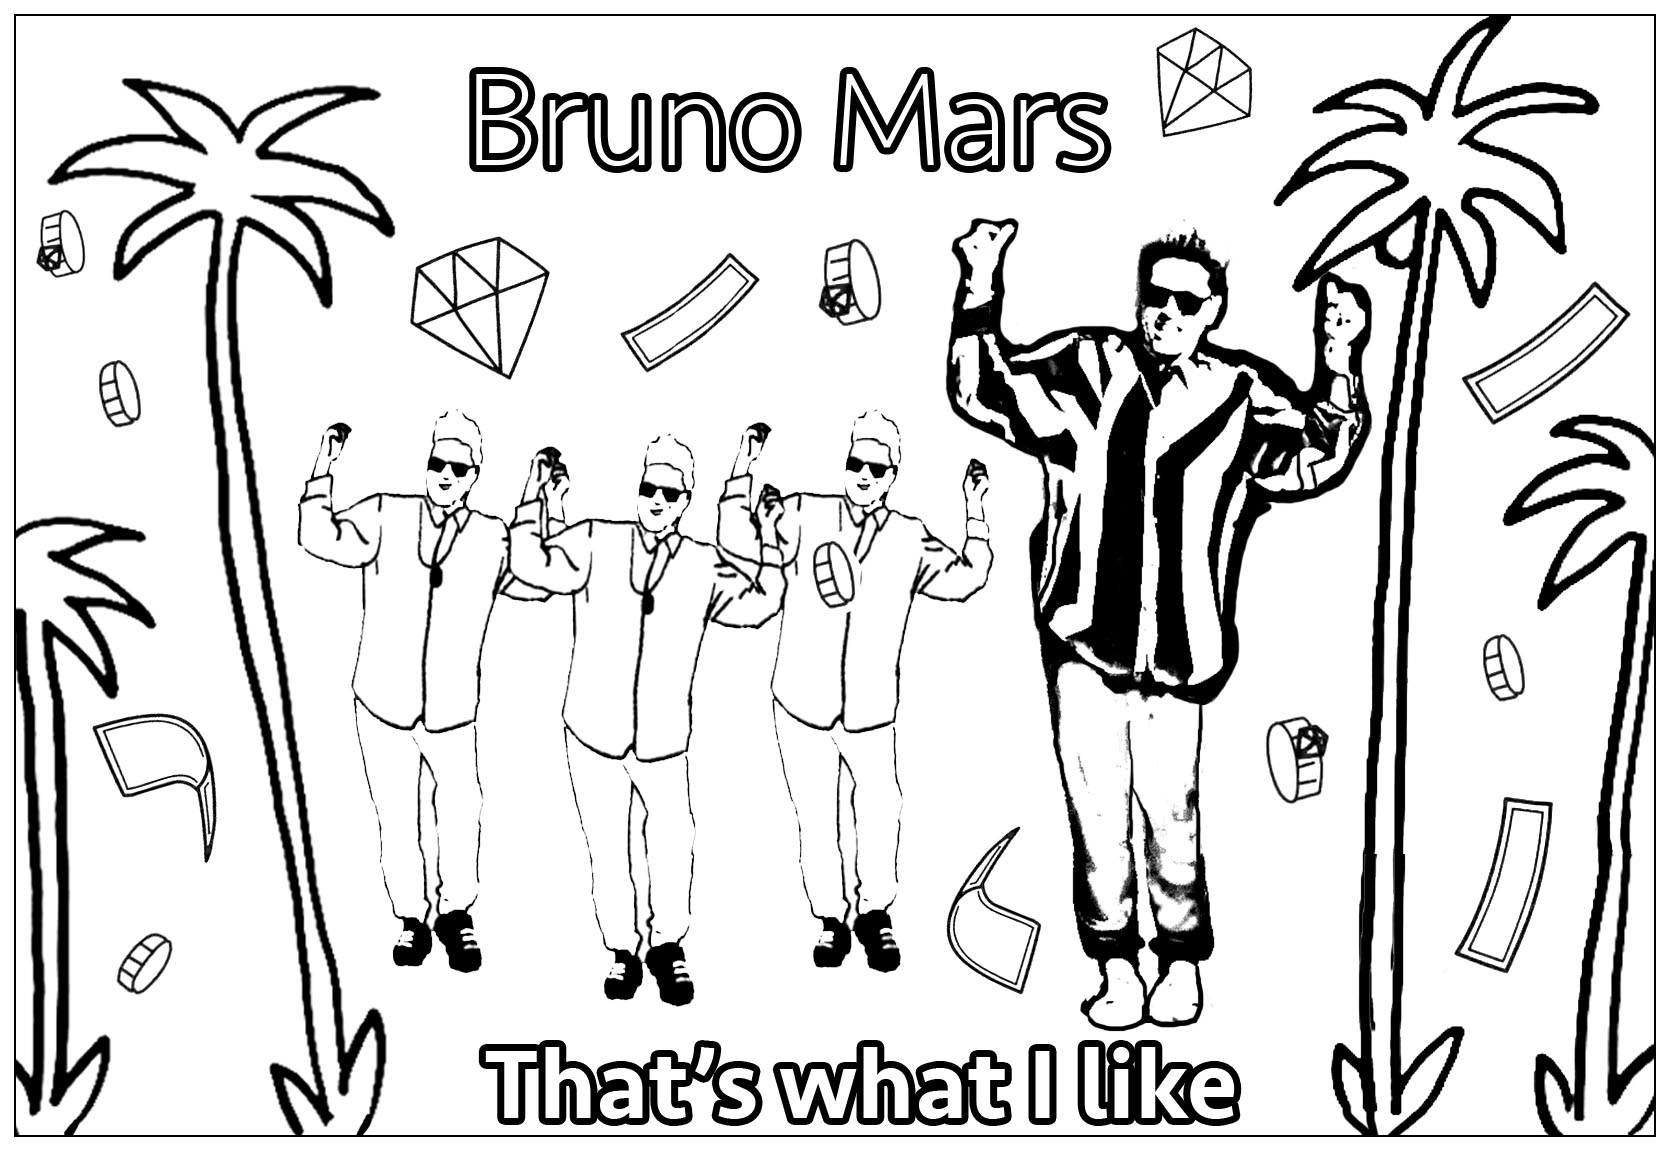 Coloração inspirada no clip de Bruno Mars 'That's what I like'